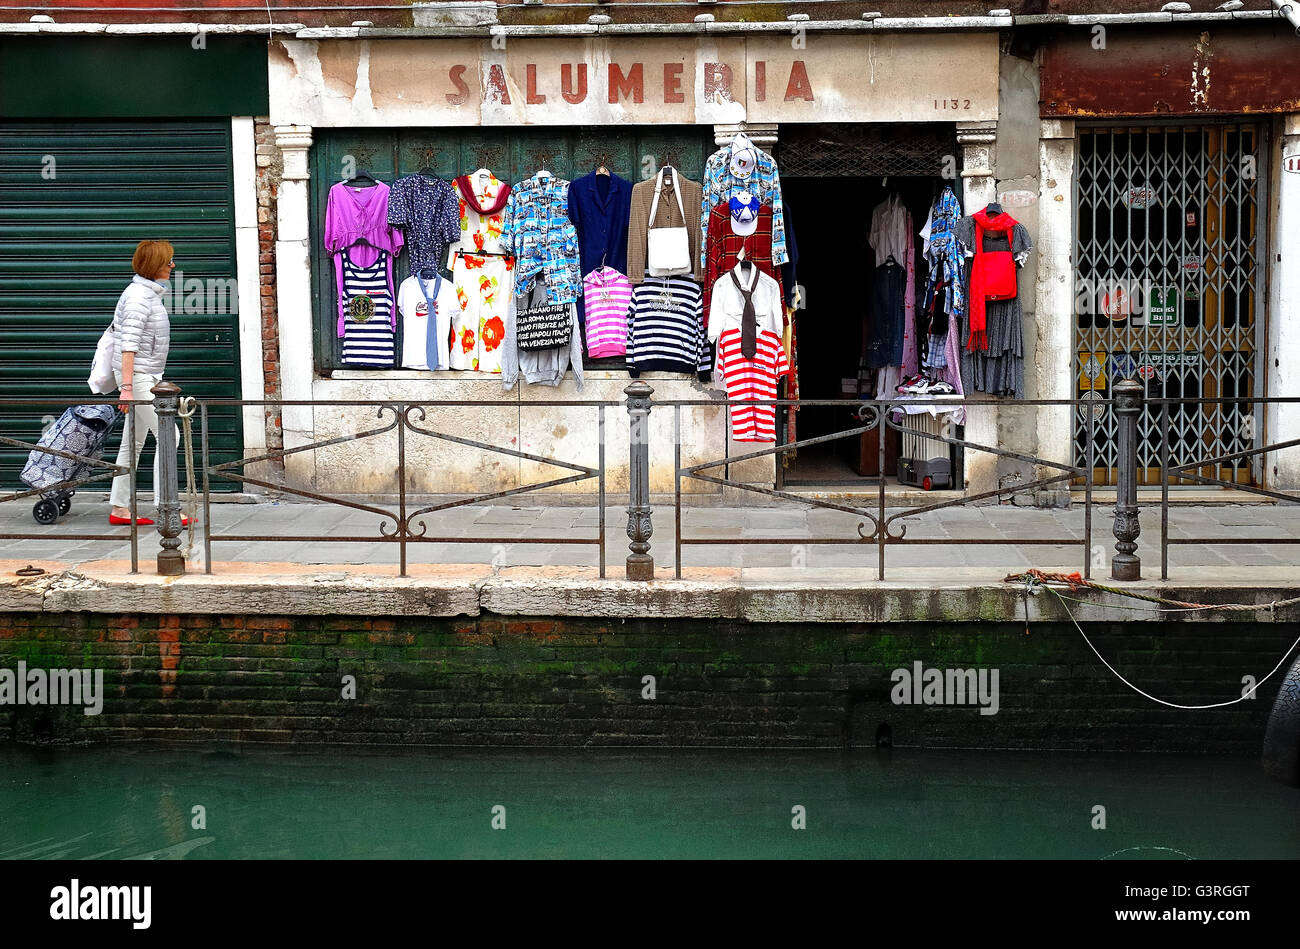 Sestriere Castello, Venise, Italie. Une ancienne épicerie fine maintenant gérés par des Chinois. Aujourd'hui, le magasin vend des vêtements. Les Chinois ont acheté de nombreuses boutiques dans la ville. Banque D'Images